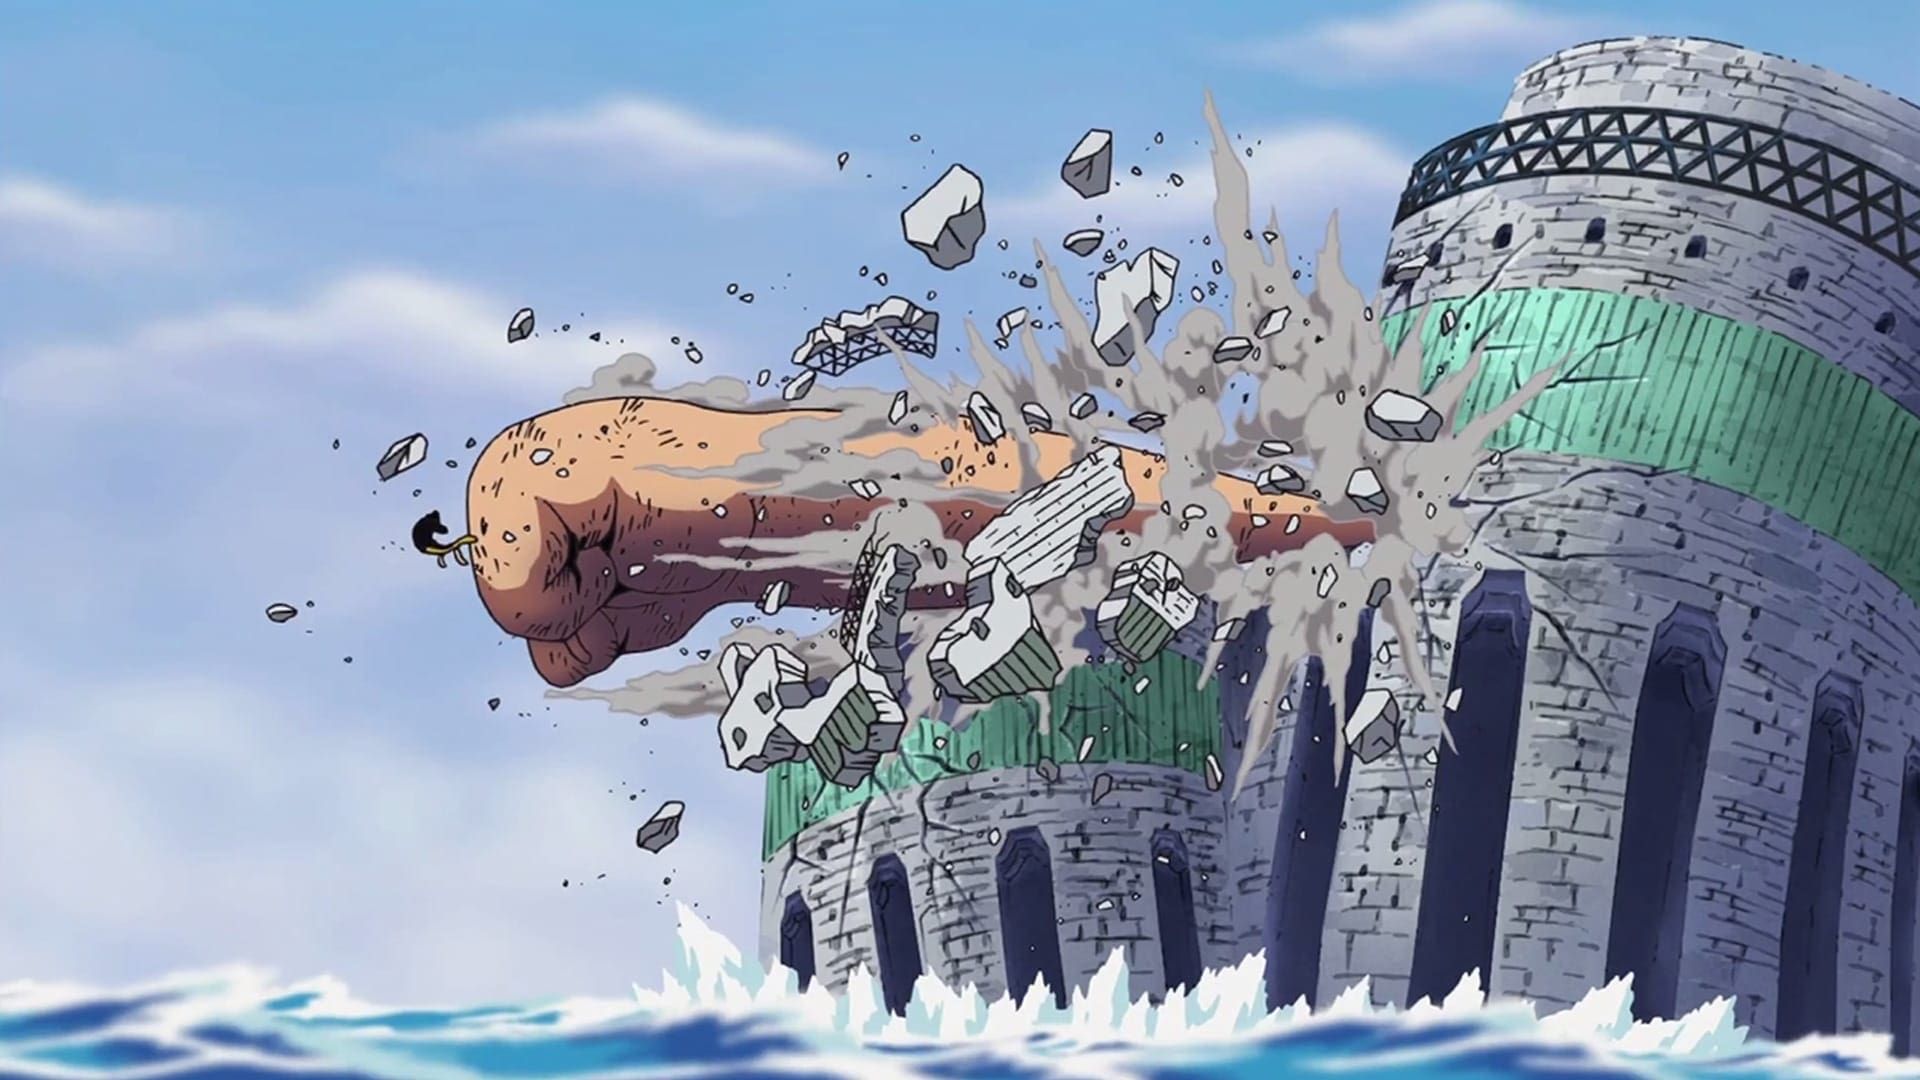 Watch One Piece · Water Seven Full Episodes Free Online - Plex